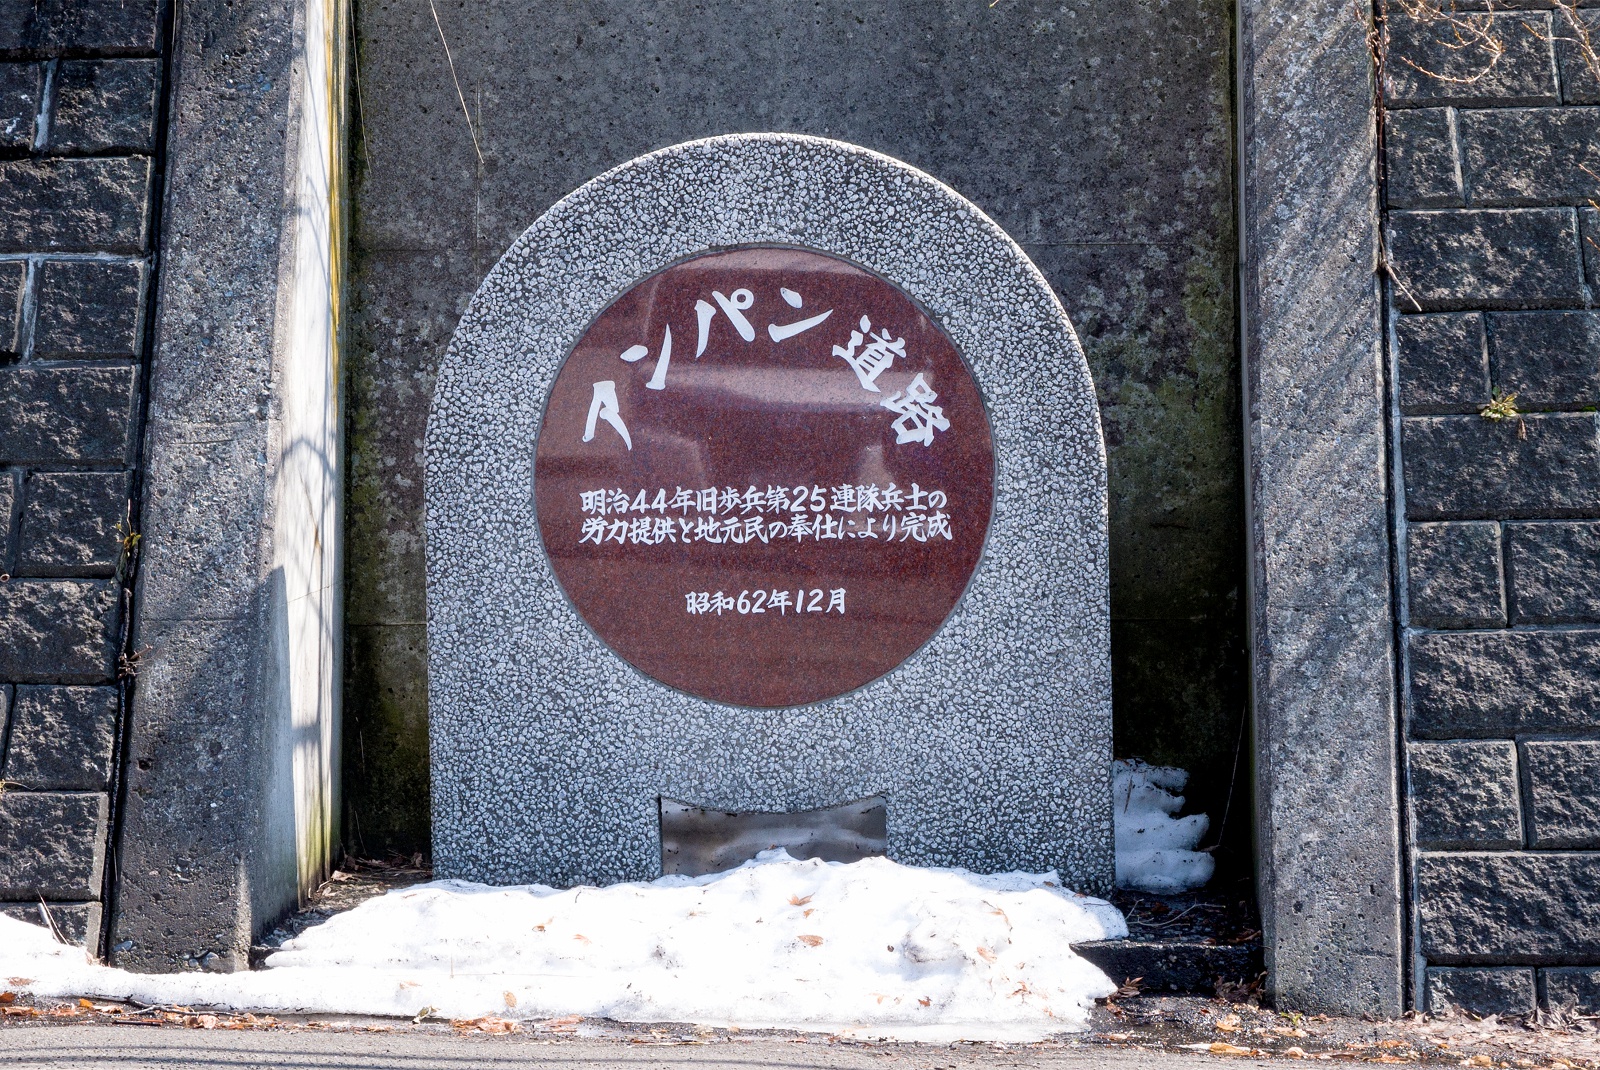 ユニークな名前に温かい歴史が！札幌に潜む「アンパン道路」とは？